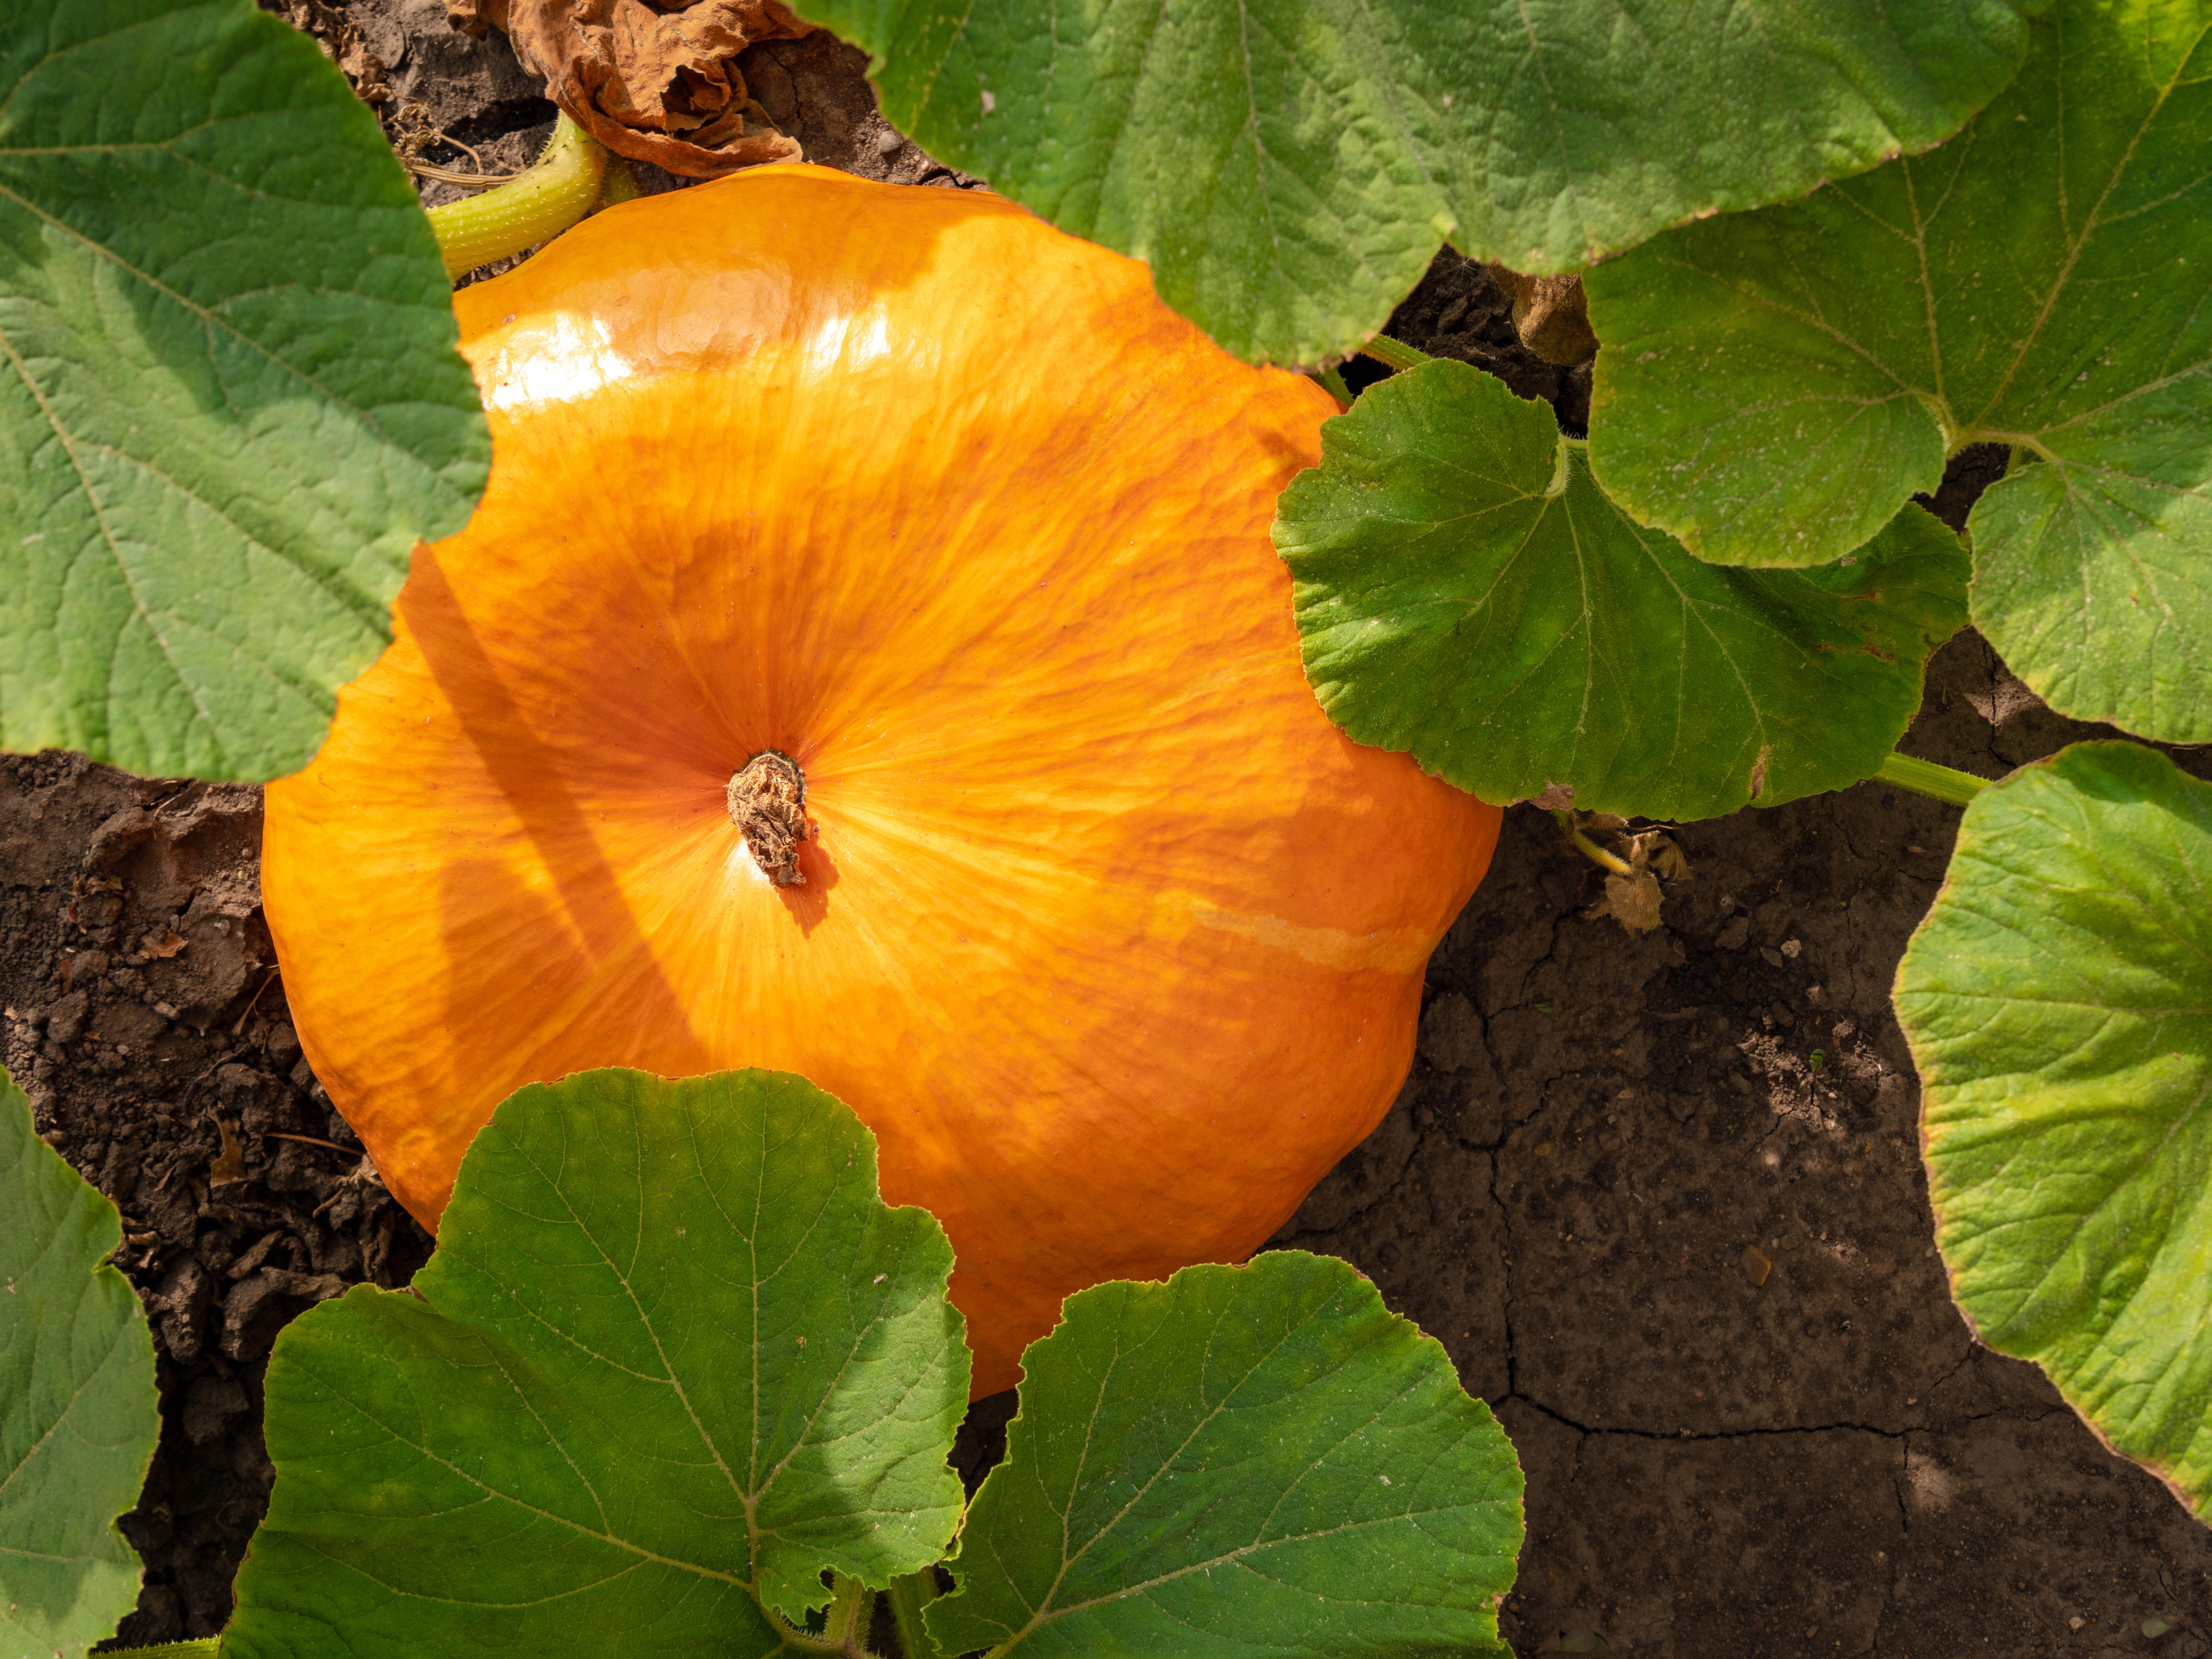 A pumpkin on the vine (alamy/PA)